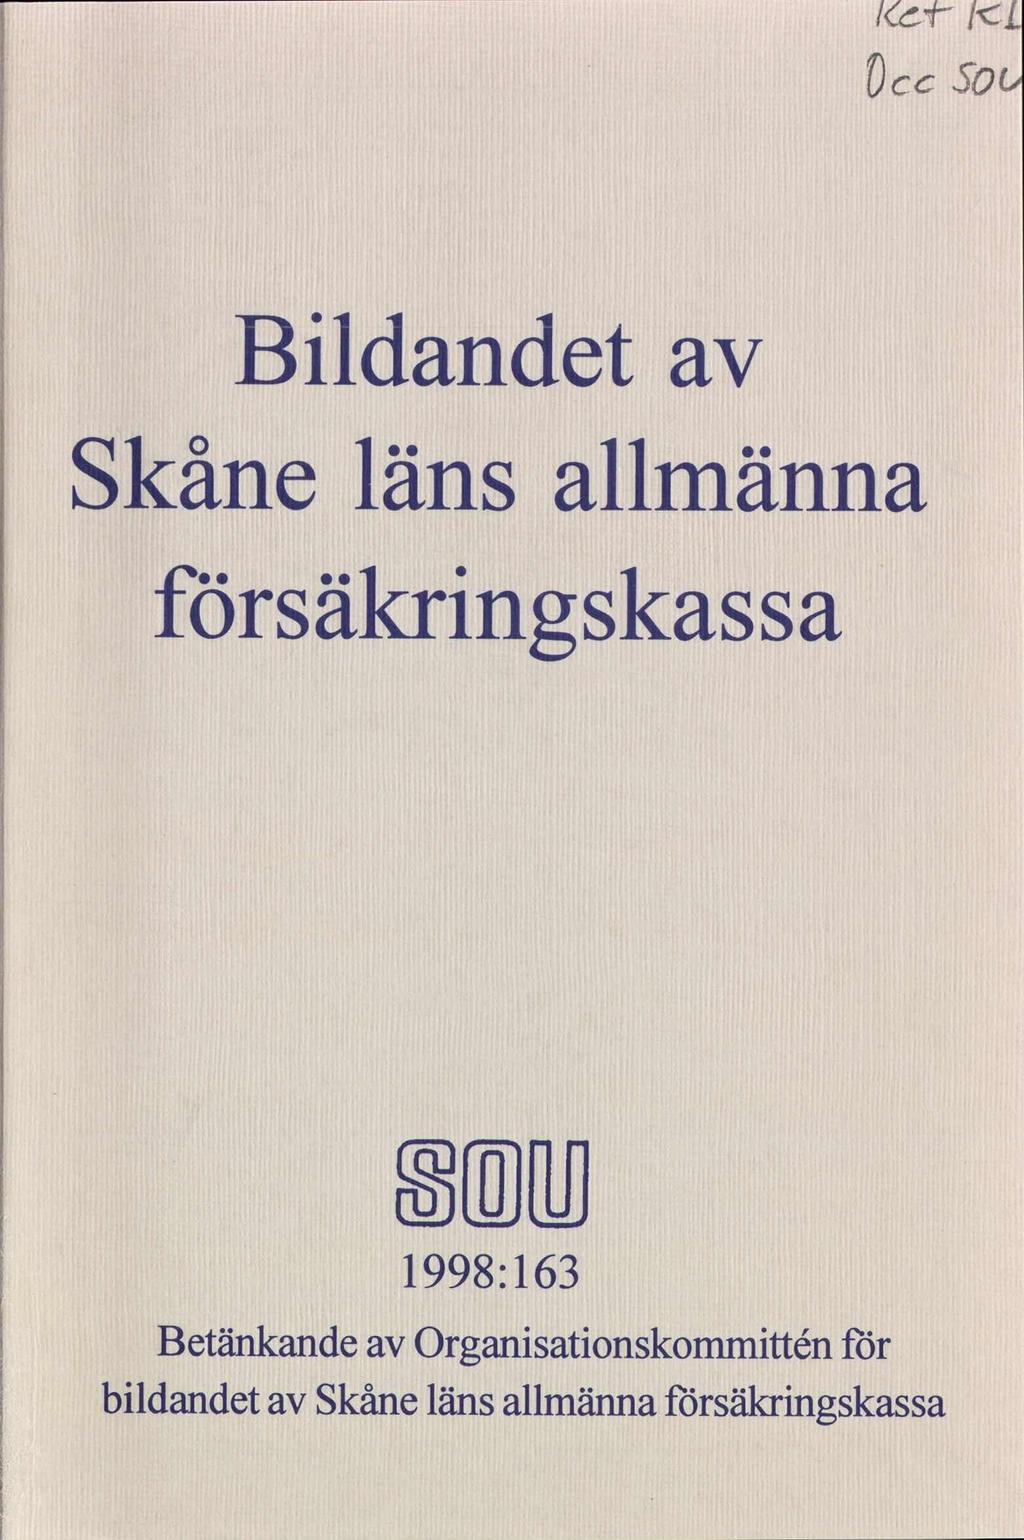 lcd /cl Occ 50 Bldandet Skåne läns allmänna säkrngskassa SMB 1998:163